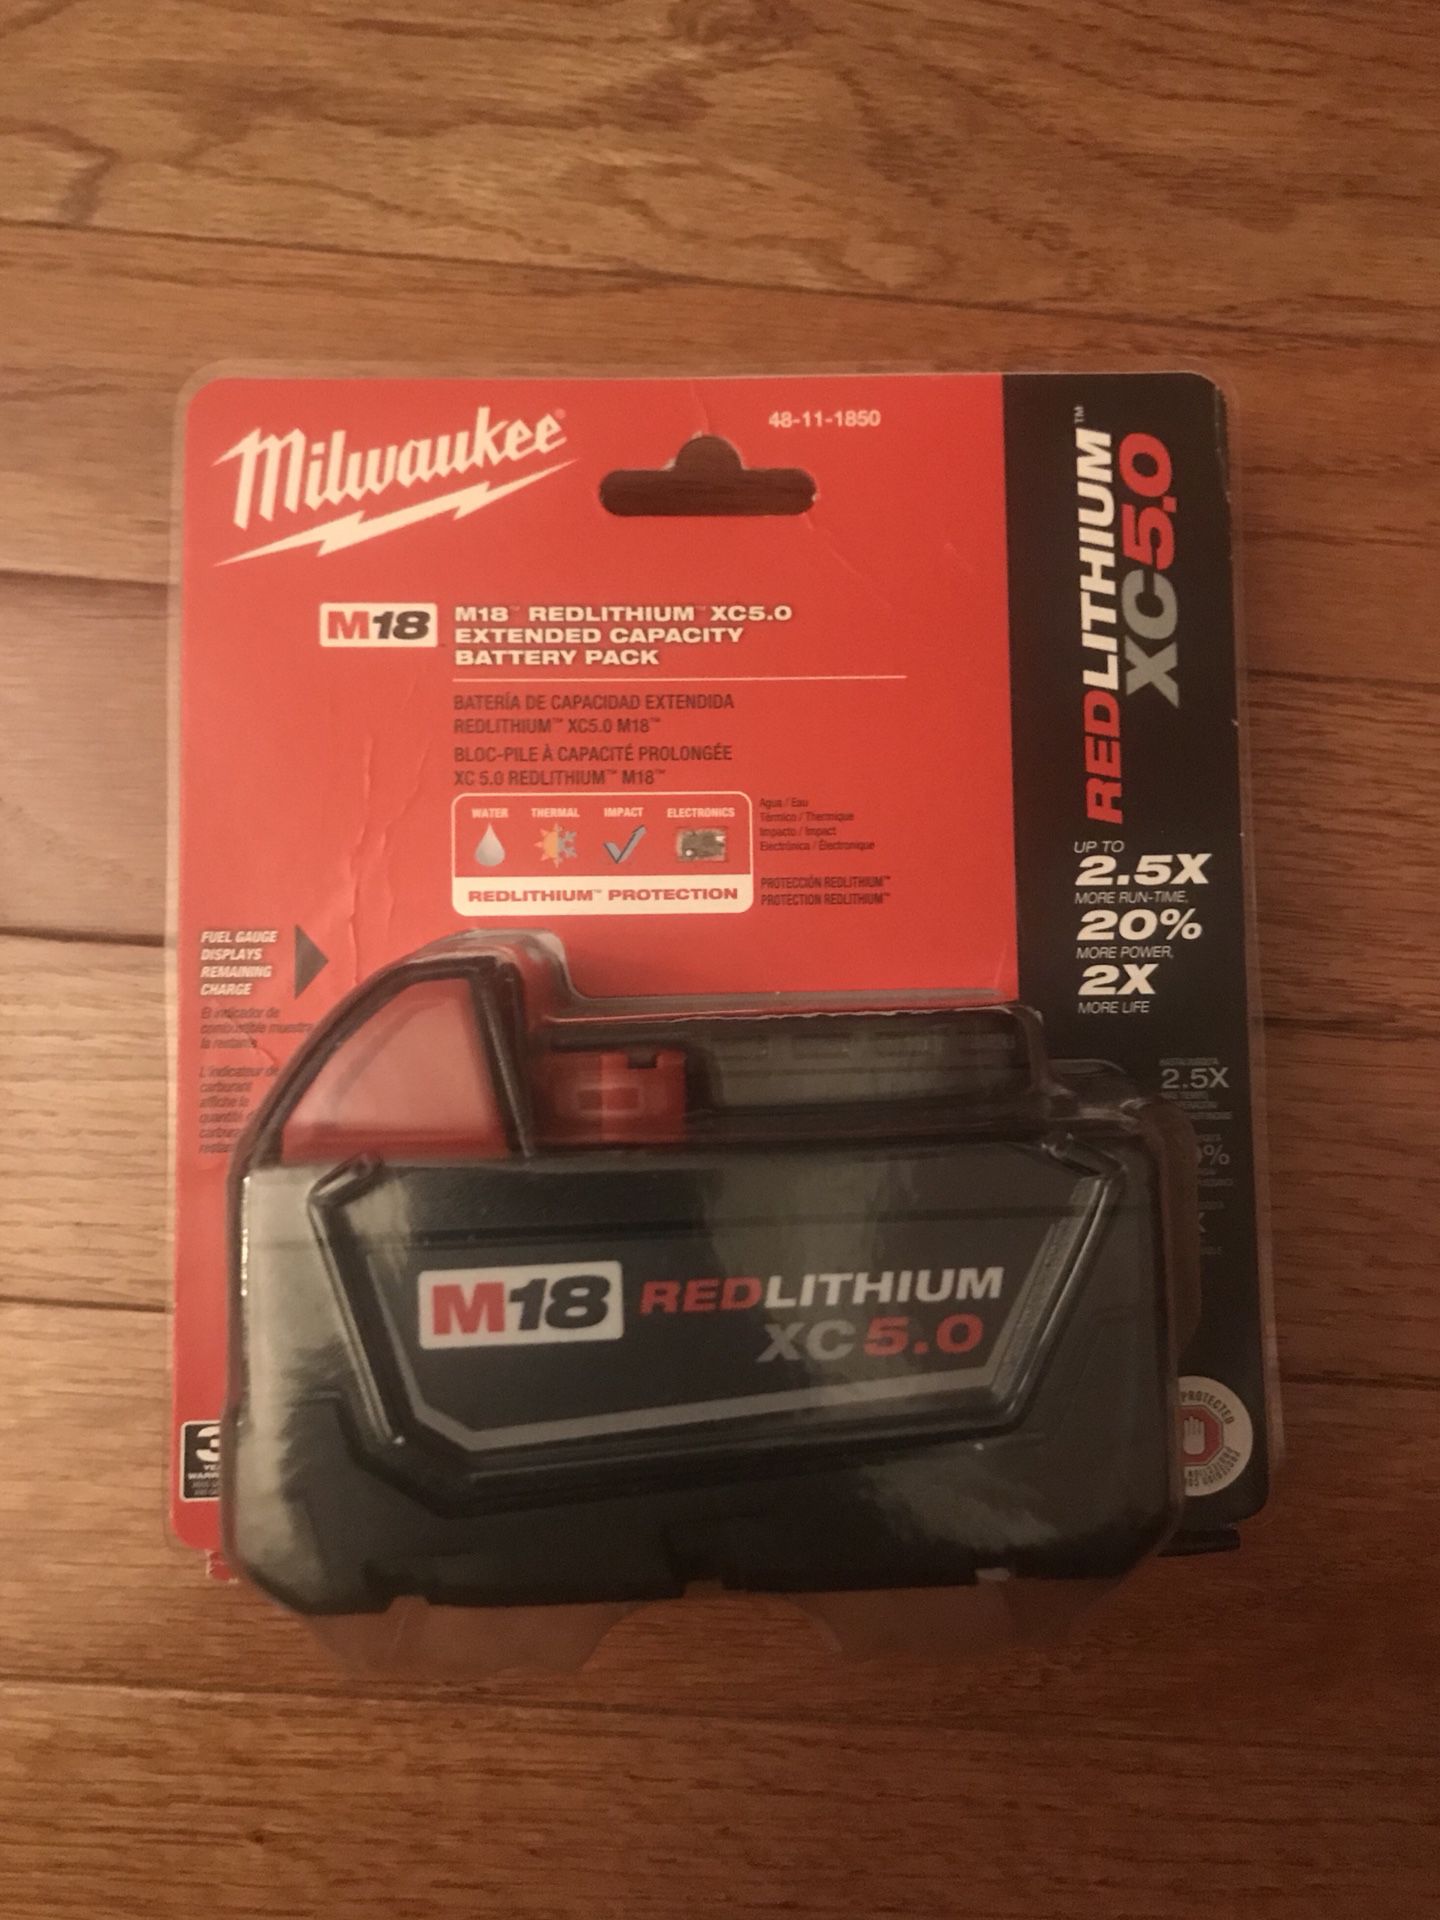 Brand new Milwaukee M18 Xc 5.0 Battery